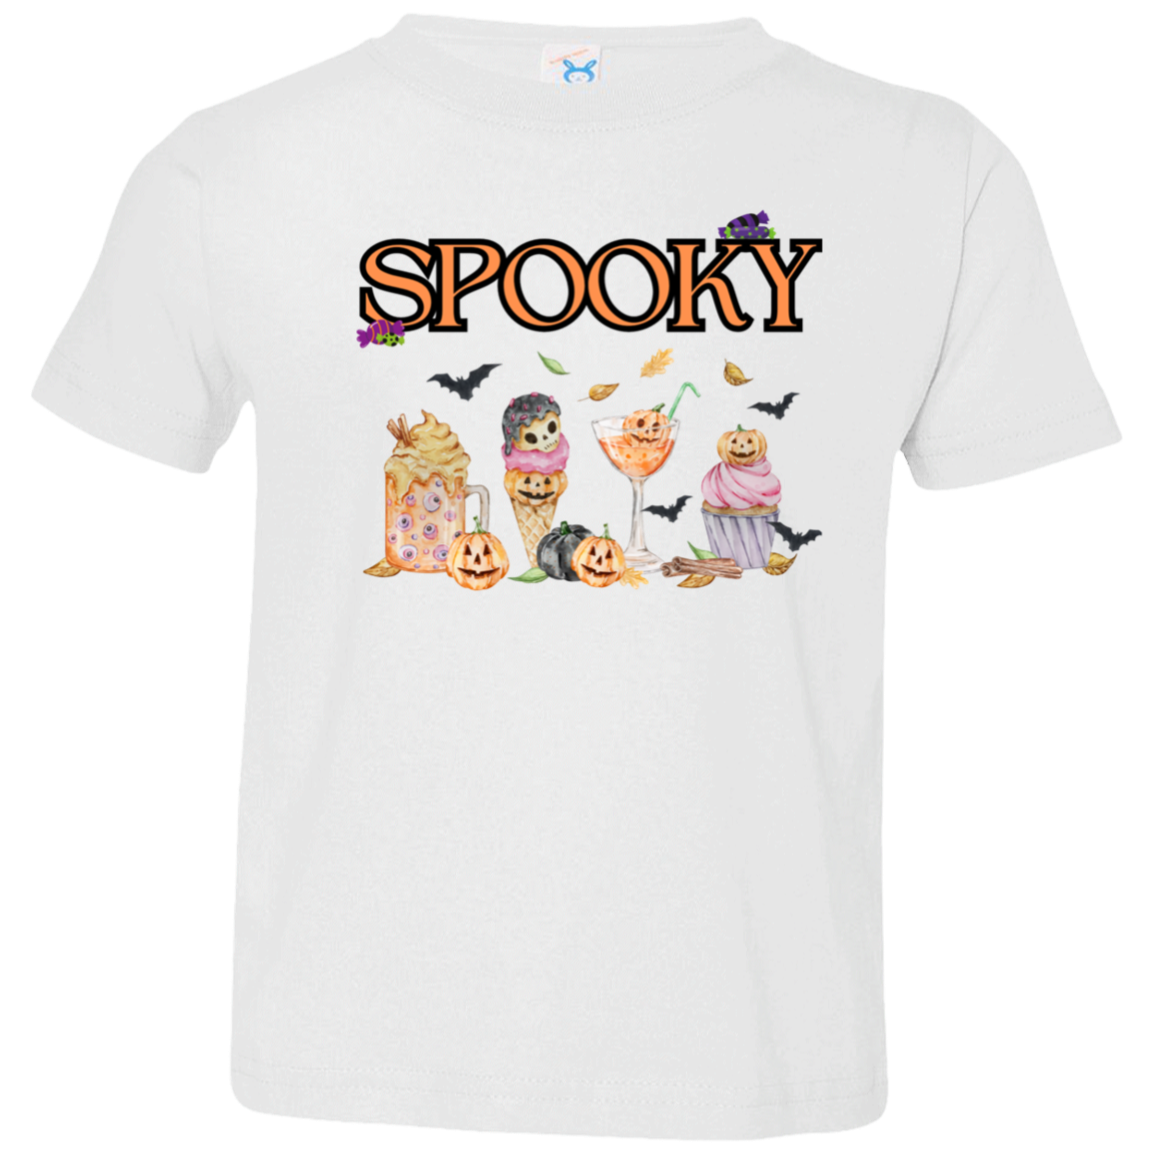 Spooky - Girls' Toddler Jersey T-Shirt